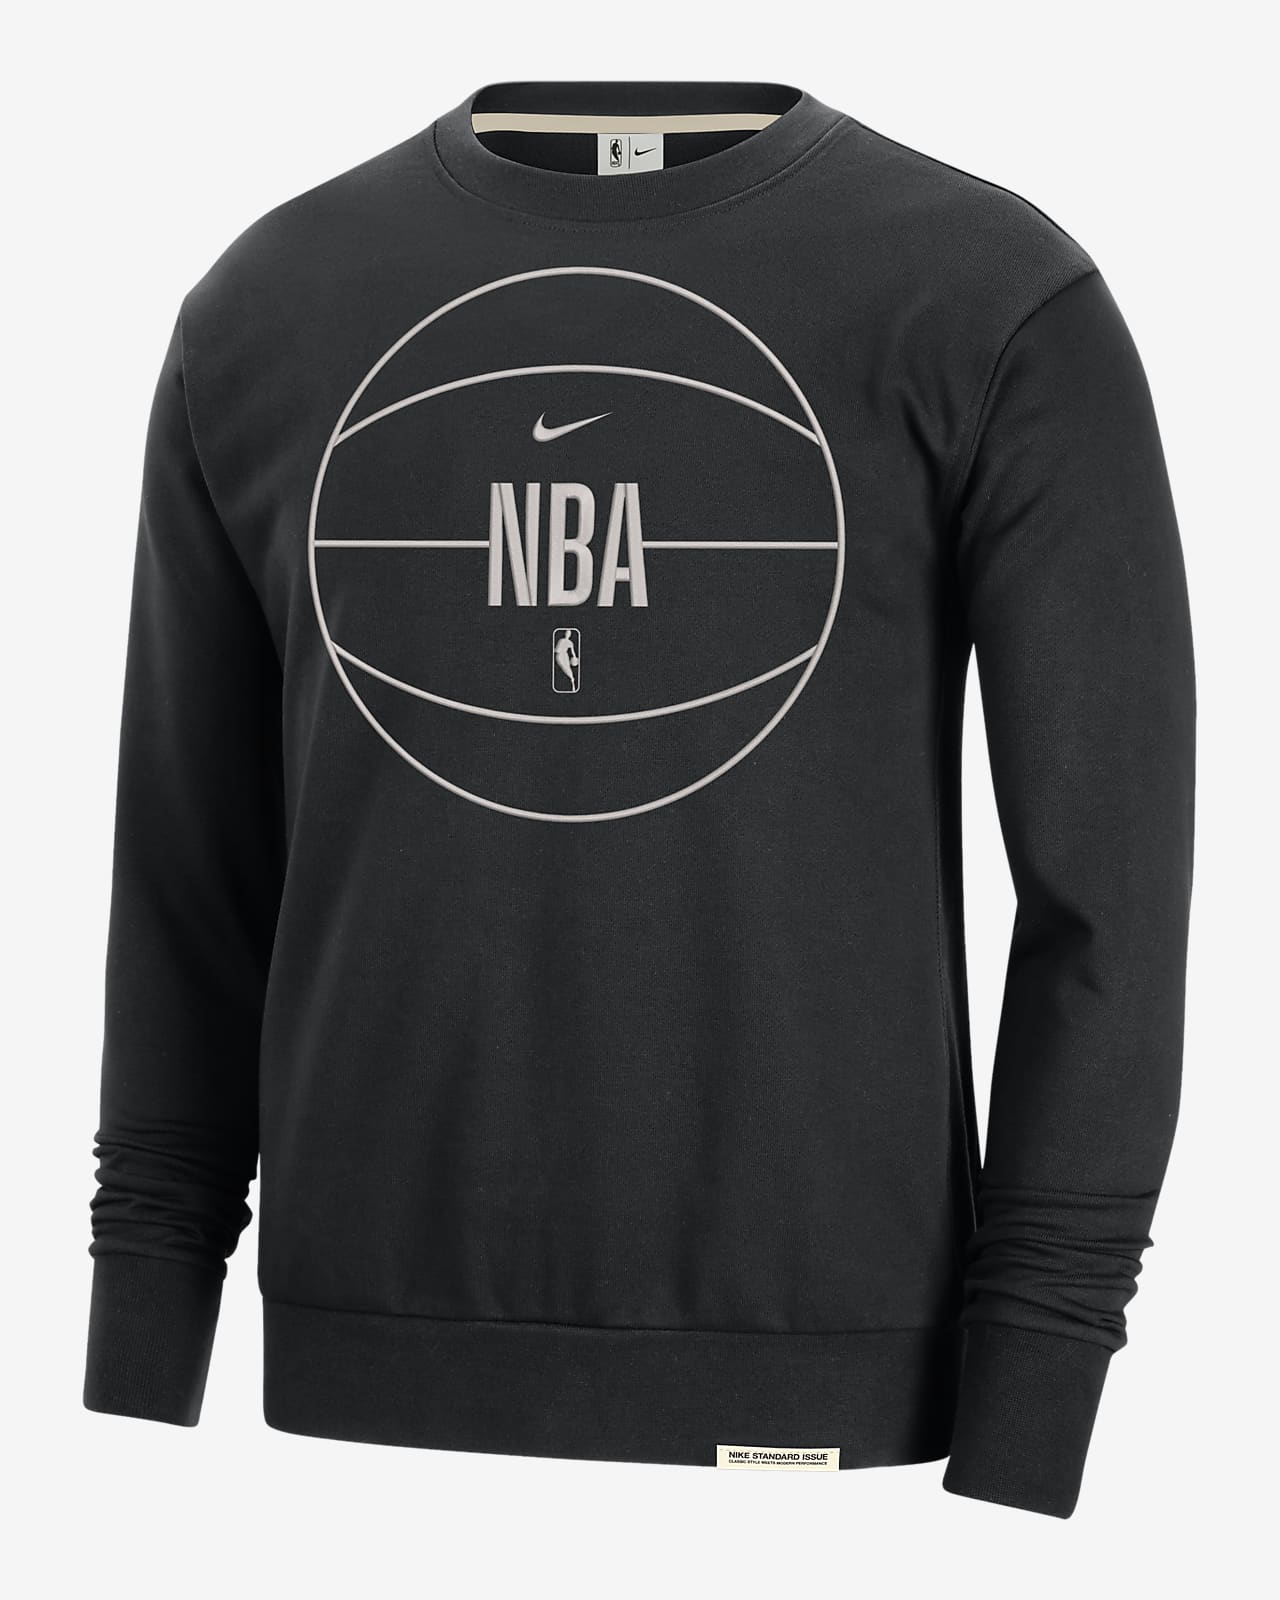 Team 31 Standard Issue Nike Dri-FIT NBA-Sweatshirt für Herren